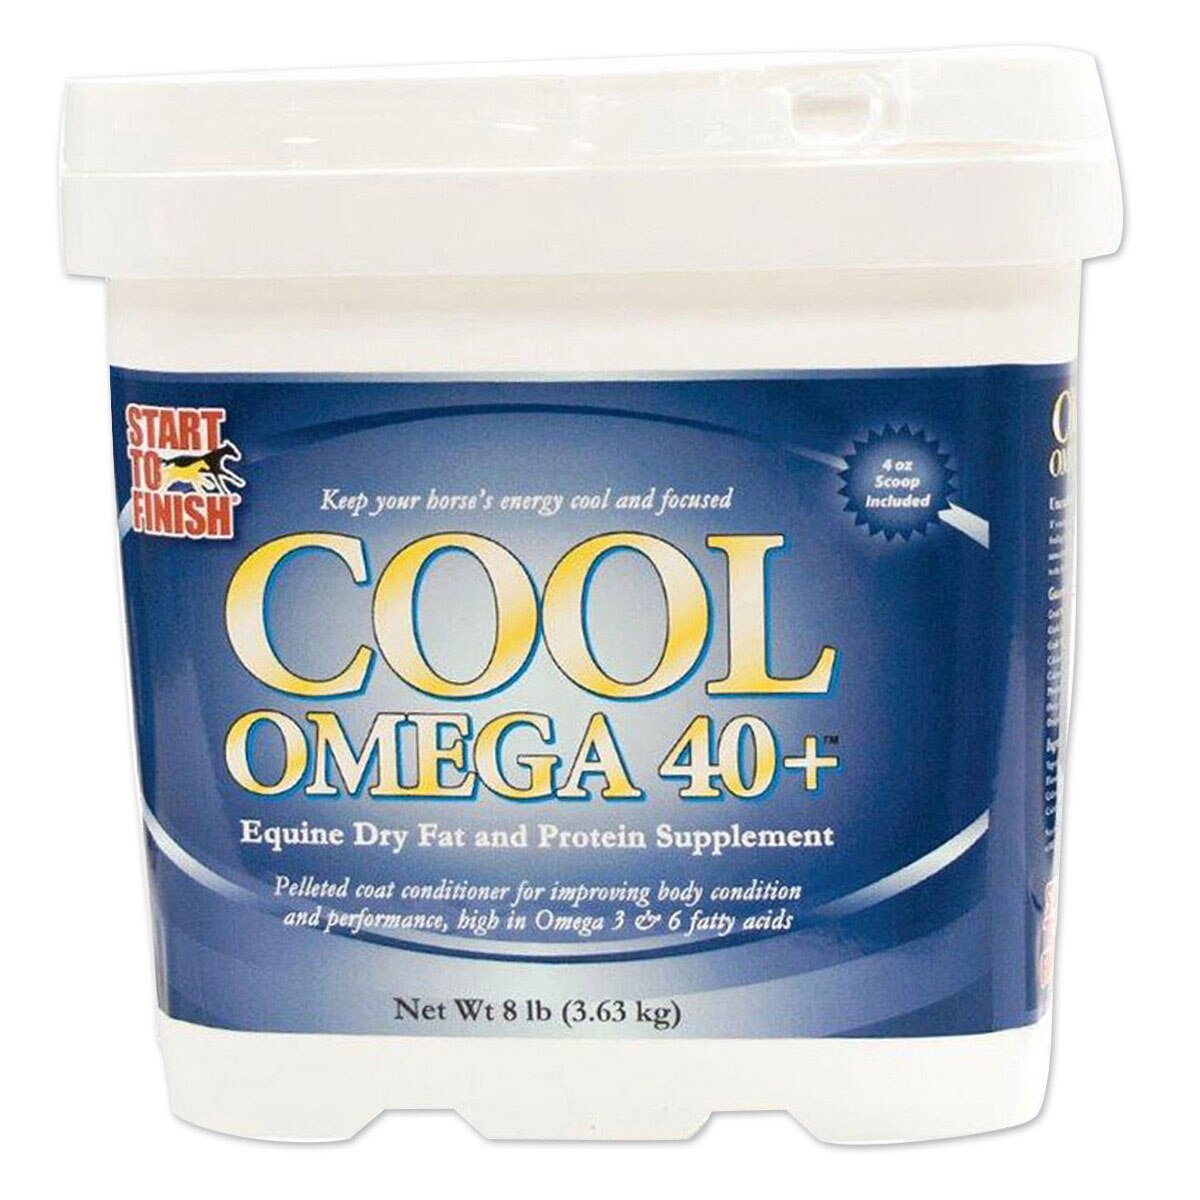 omega 40